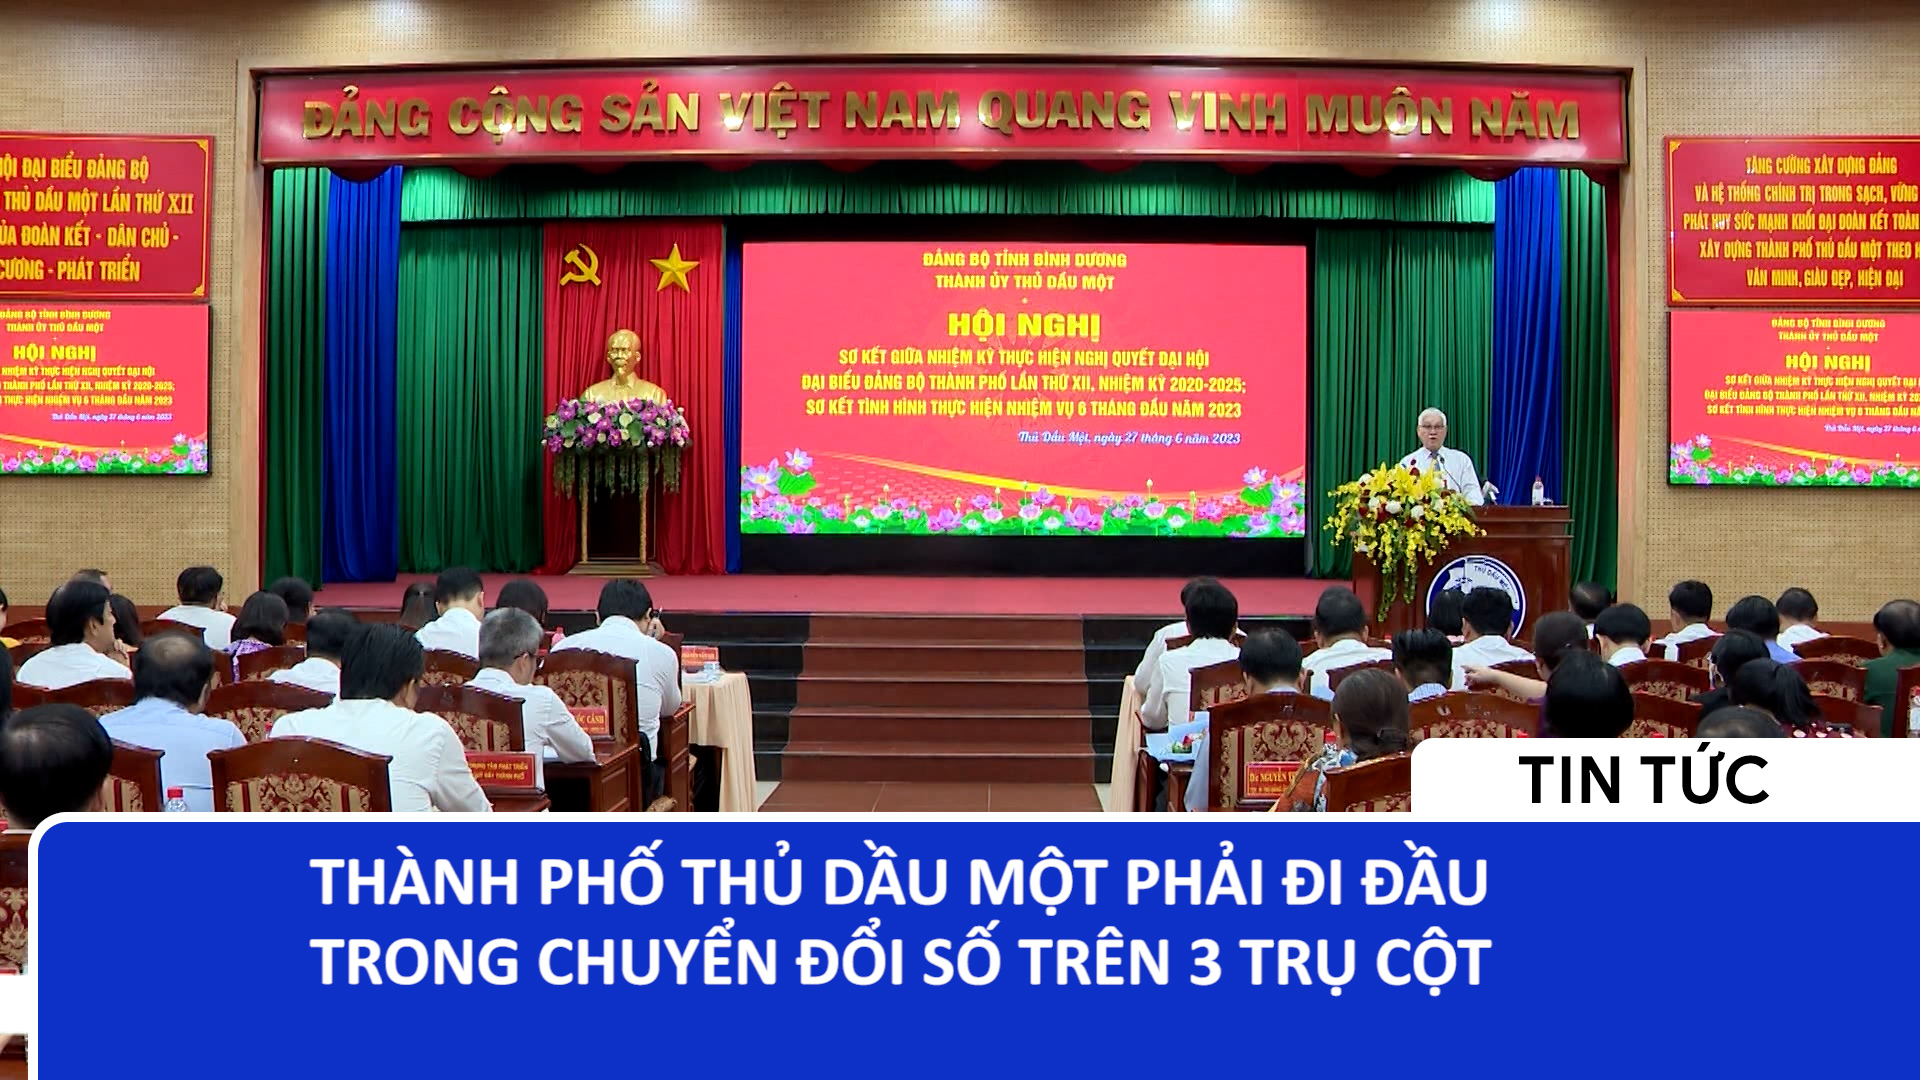 Bình Dương đi đầu trong thúc đẩy phát triển khu công nghiệp sinh thái tại Việt Nam